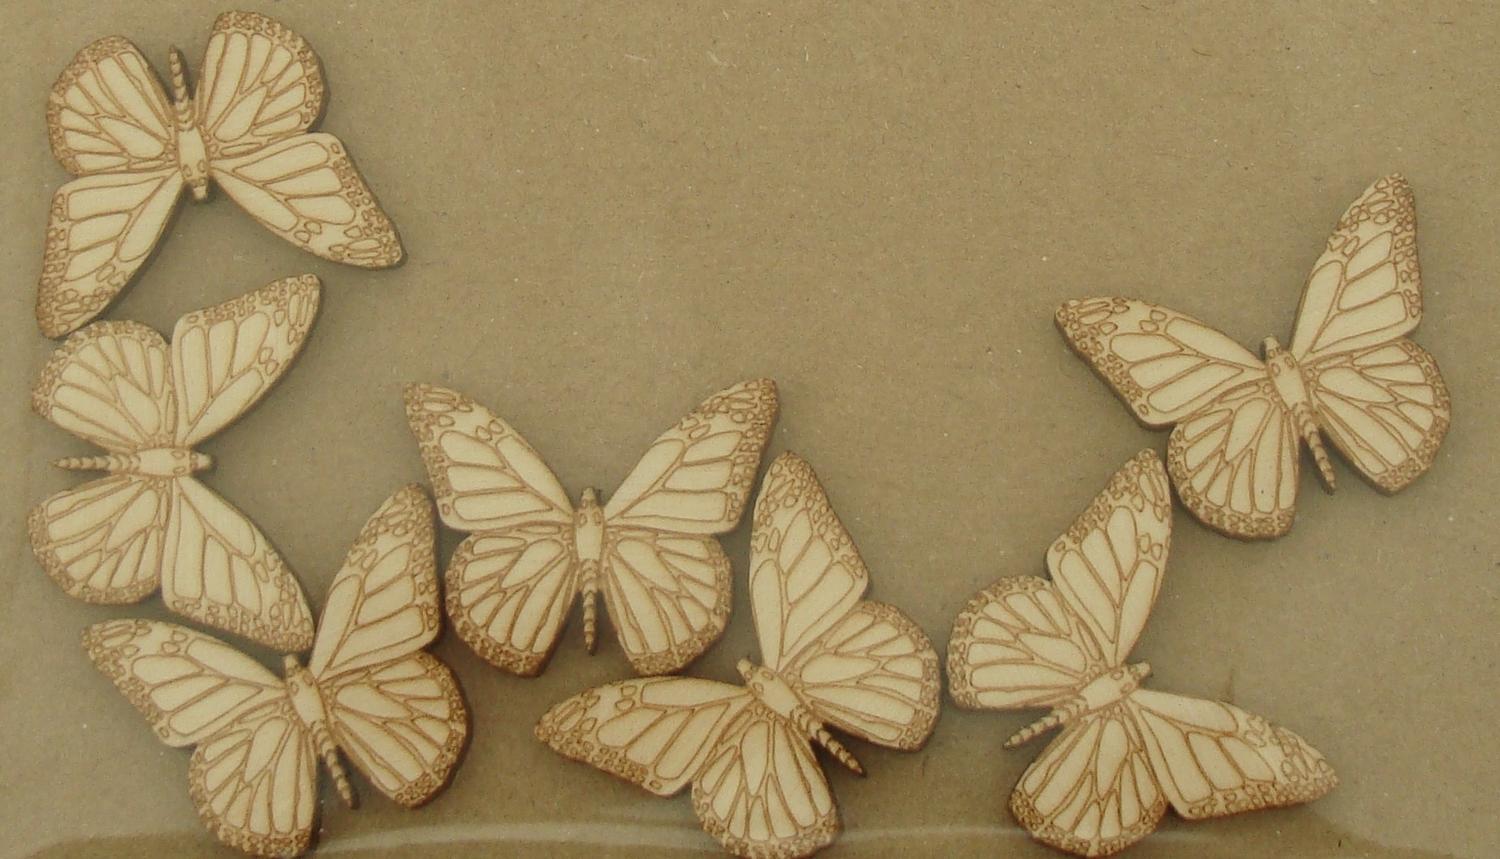 激光切割雕刻木制蝴蝶形状